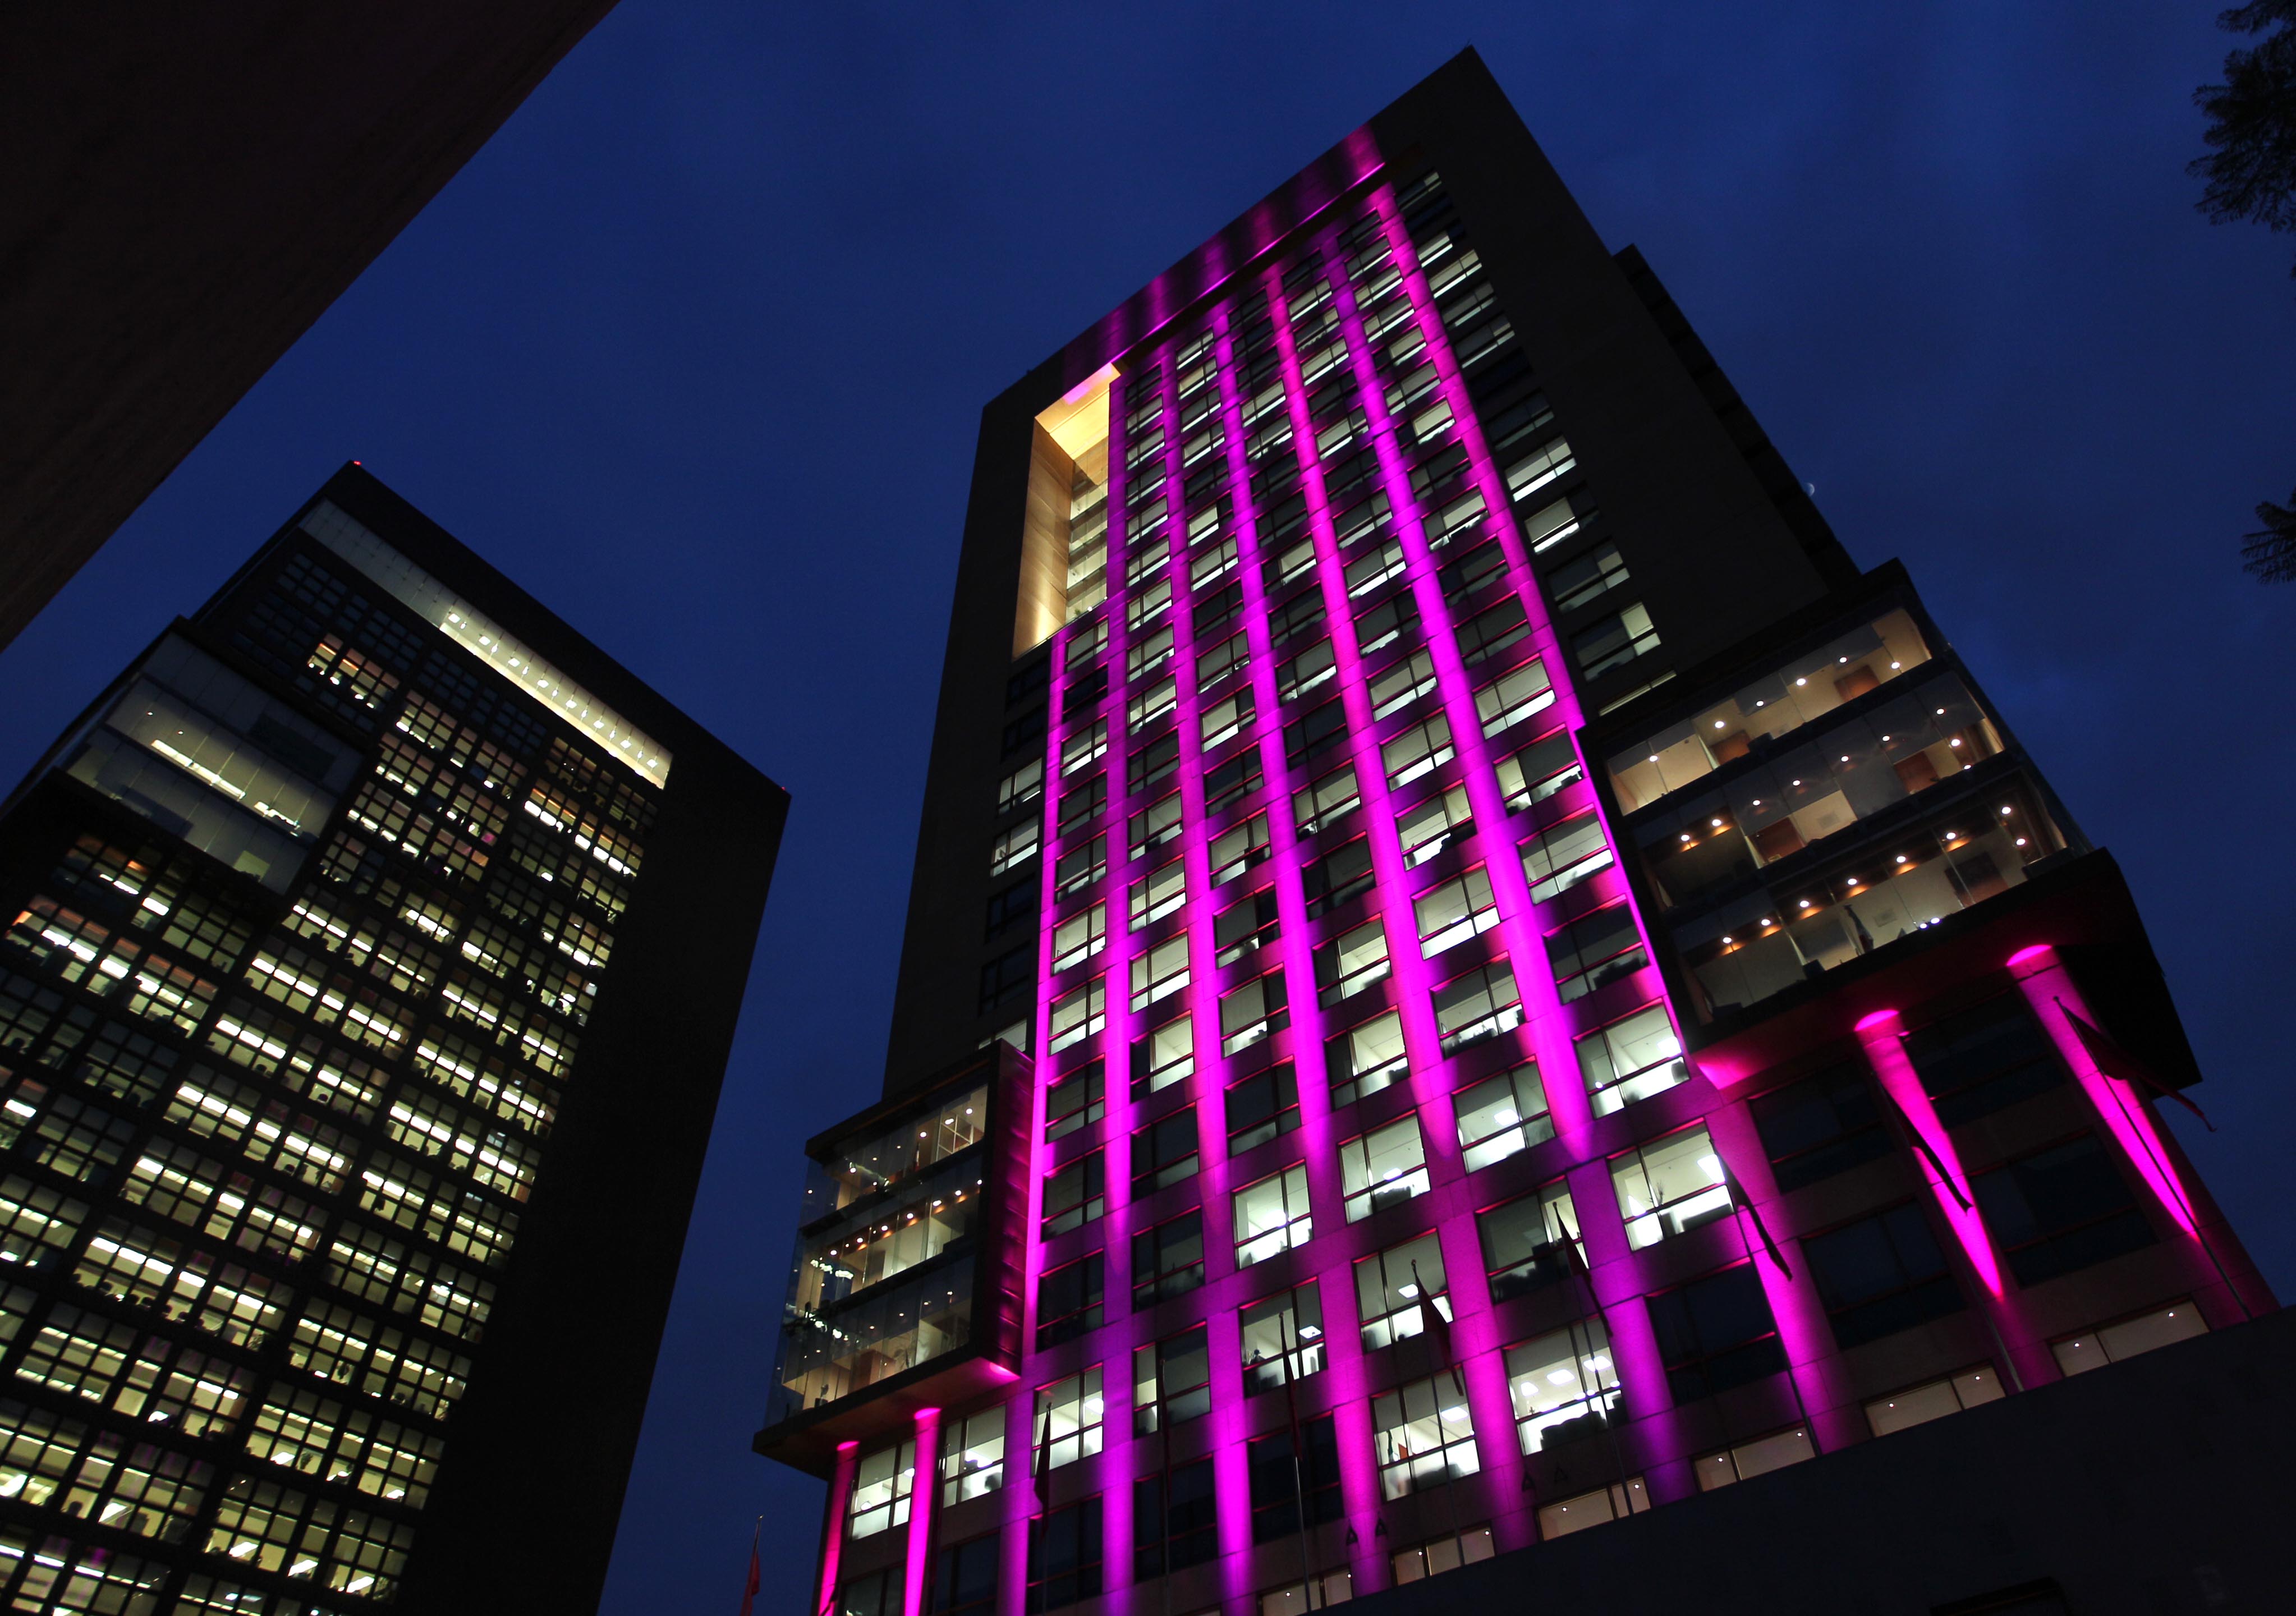 FOTO 4 Edificio de la SRE se ilumina de rosa en el D a internacional de la lucha contra el c ncer de mama.jpg